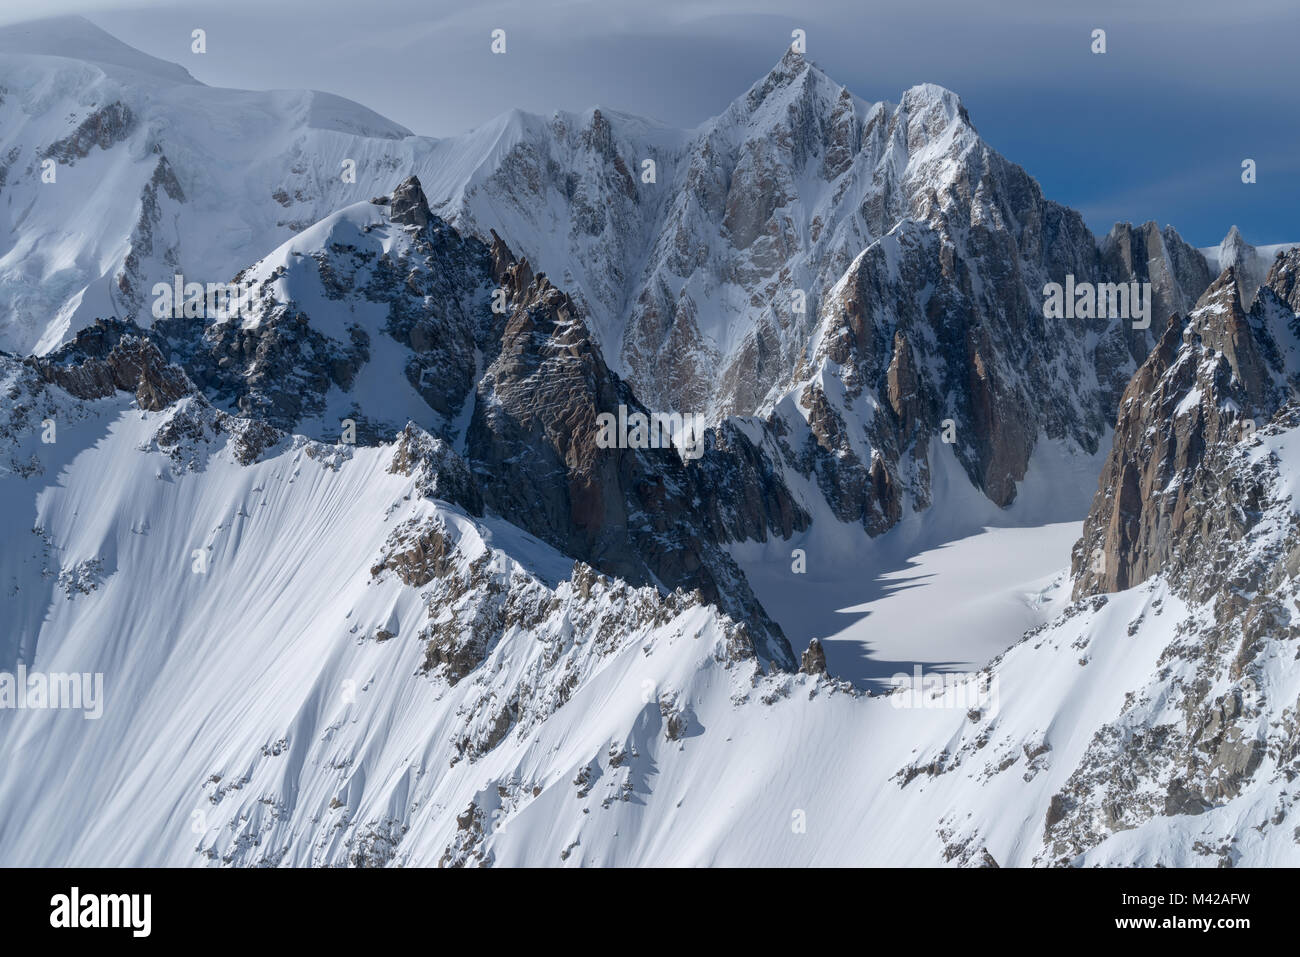 Paysages de montagne, Mont Blanc, de la vallée d'aoste, Italie Banque D'Images